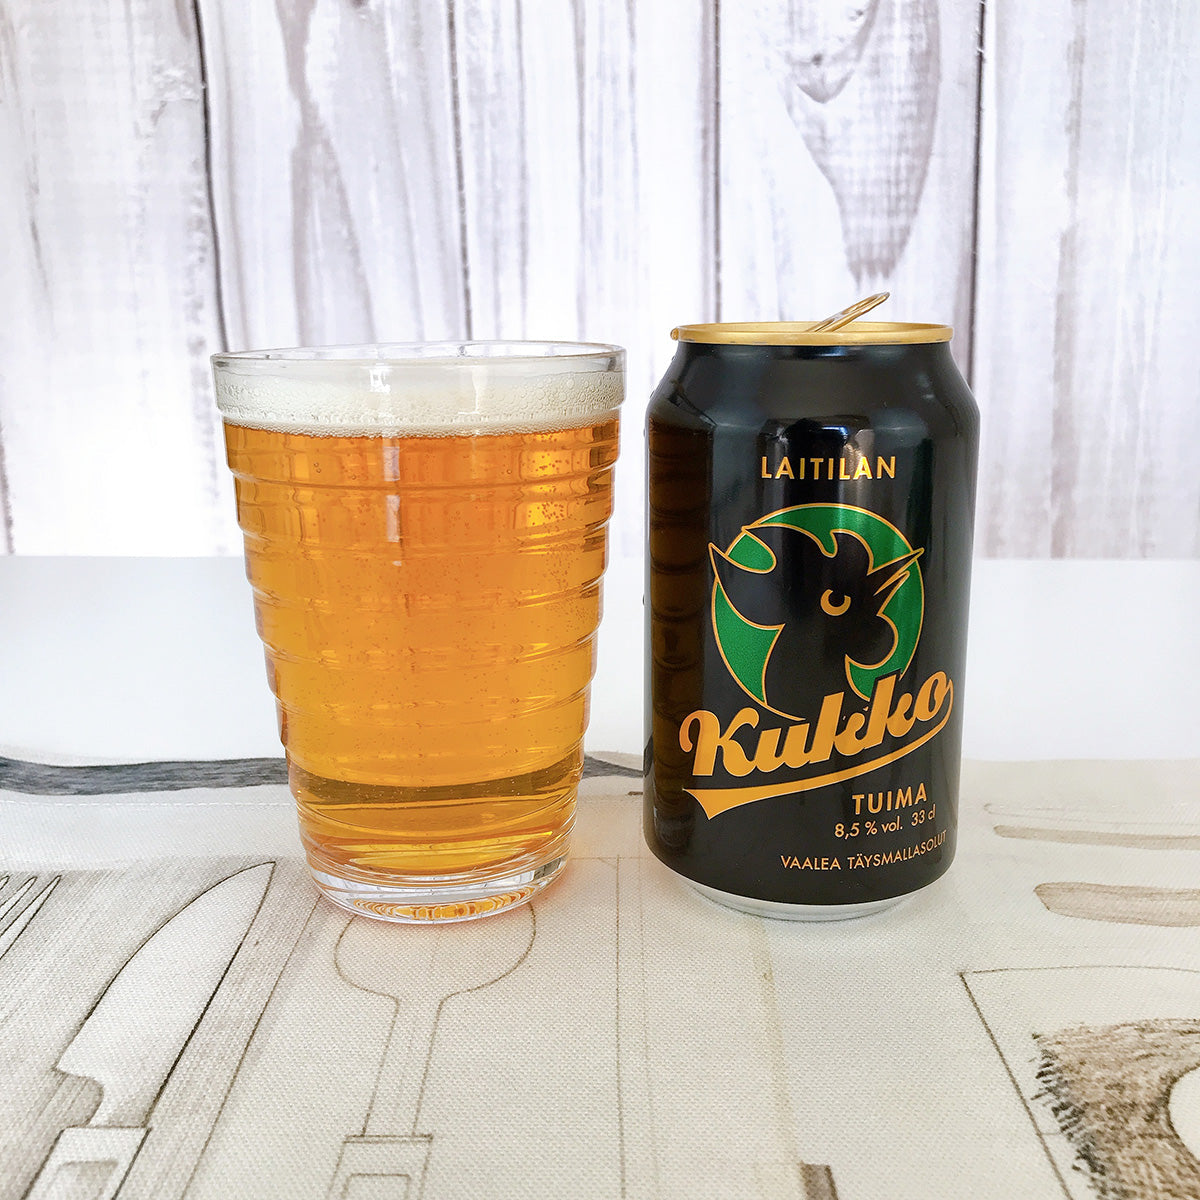 【24缶セット】Laitilan ライティラン Kukko クッコ ビール トゥイマ 330ml × 24（アルコール飲料)